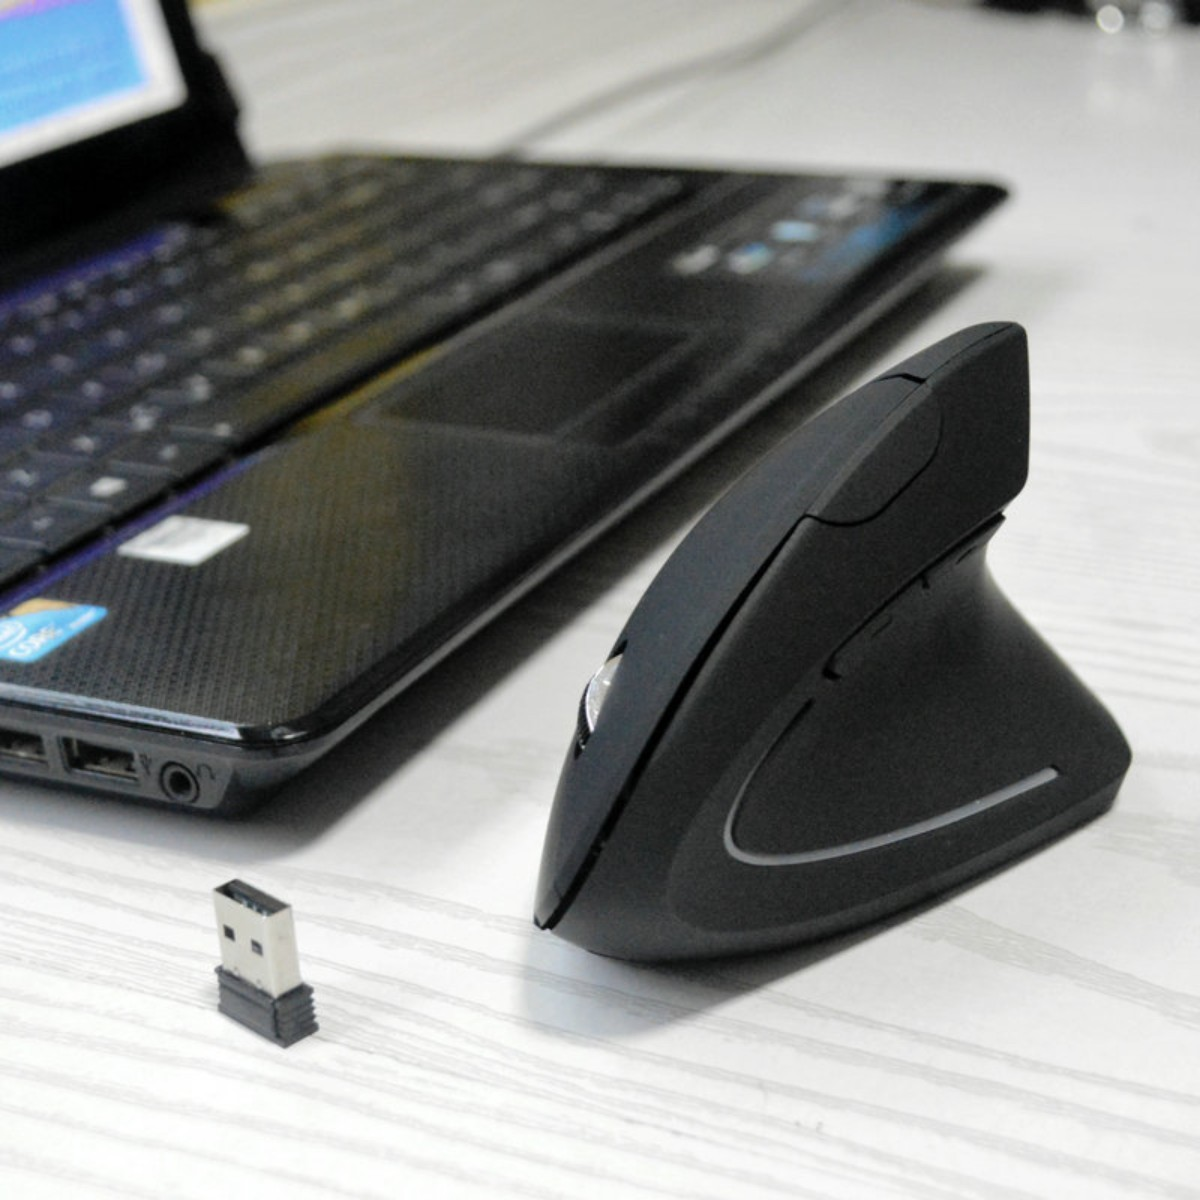 SYNTEK Kabellose Schwarz Maus, Bluetooth-Maus Schwarz beleuchtete optische Maus Ergonomische